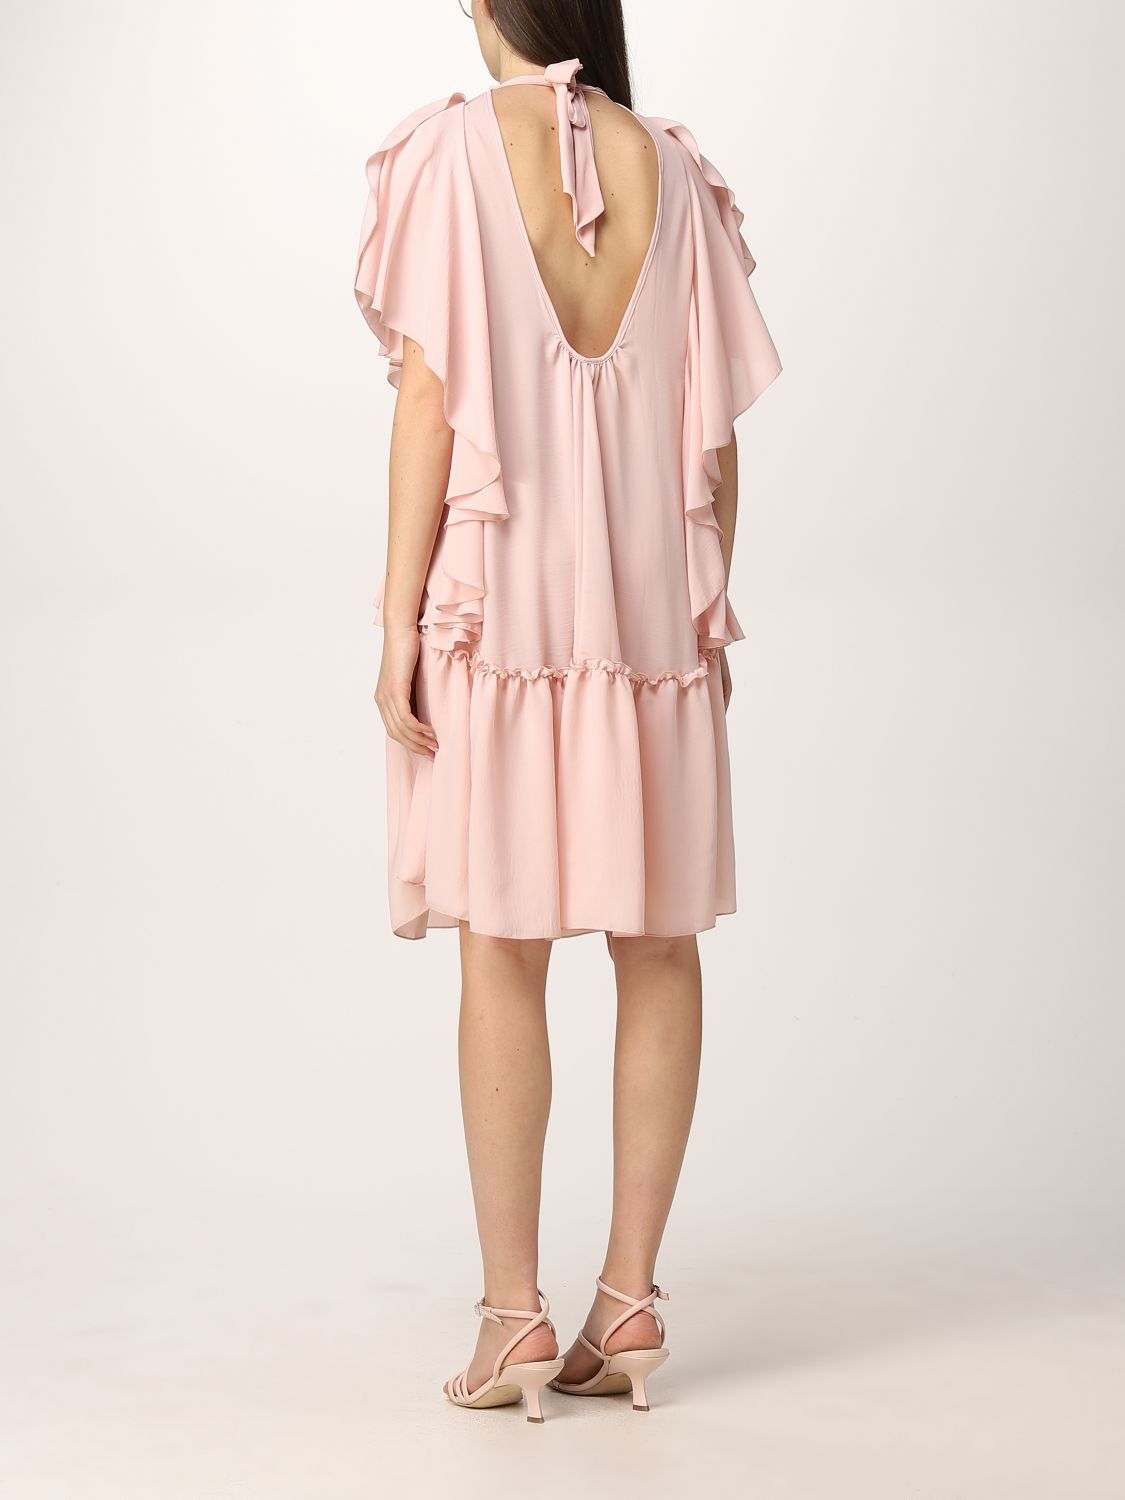 Dress Hanita: Dress women Hanita blush pink 2